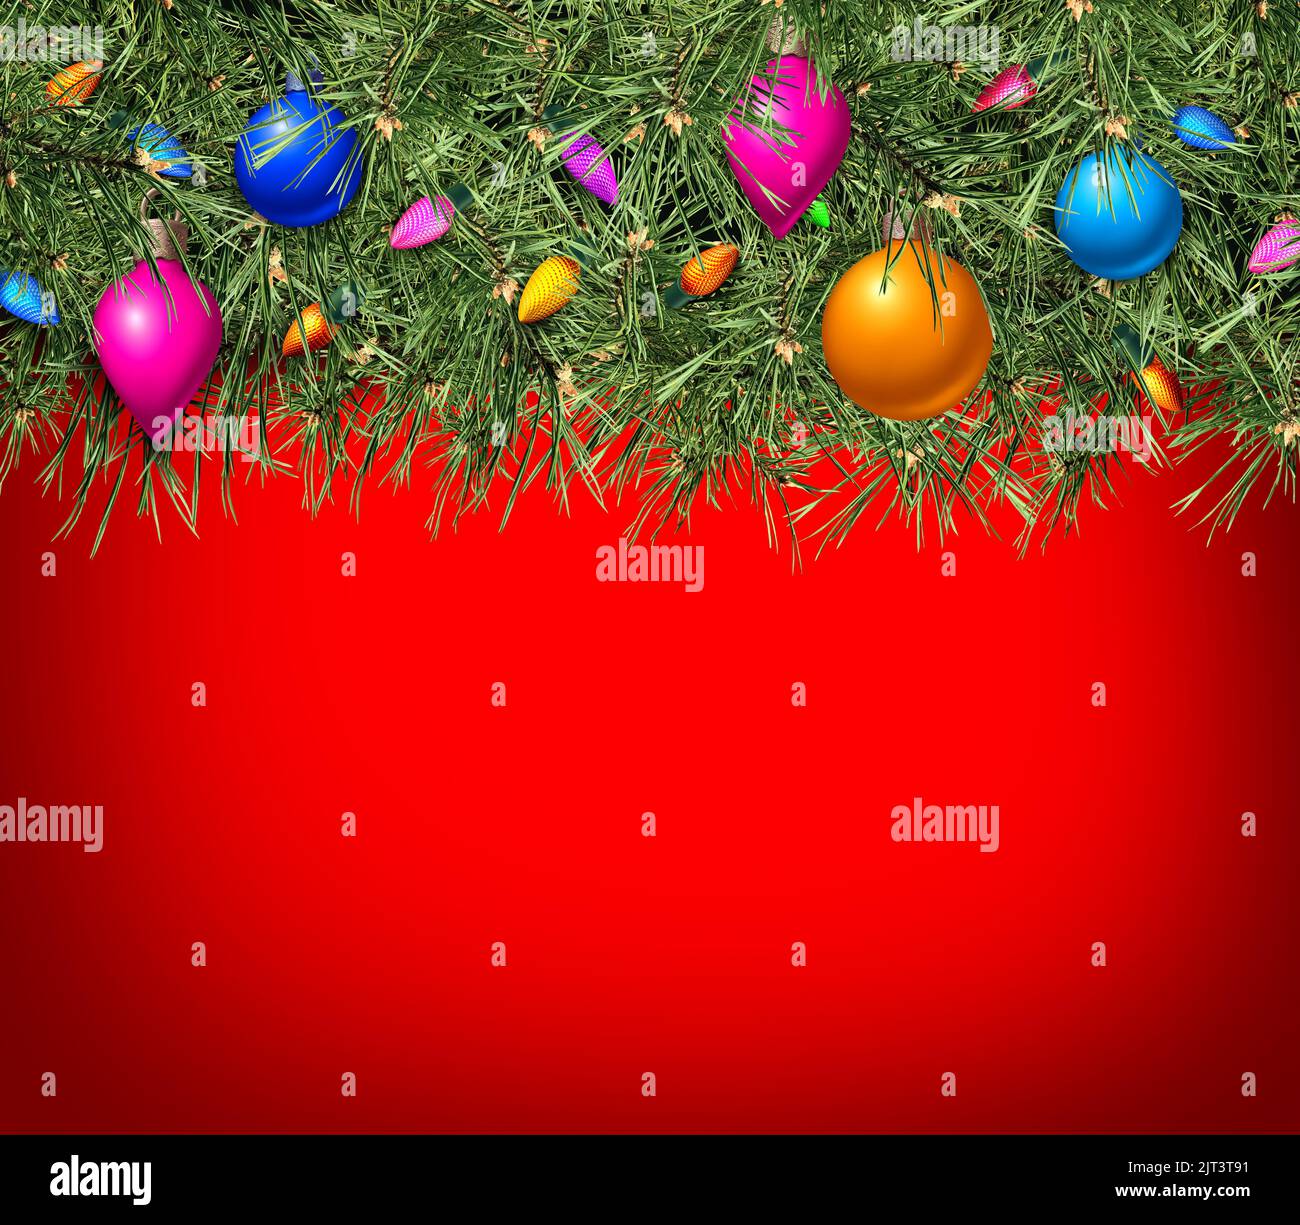 Natale sfondo rosso con pineta sempreverde e celebrazione invernale x-0mas ornamenti con area di testo come una promozione stagionale festiva Foto Stock